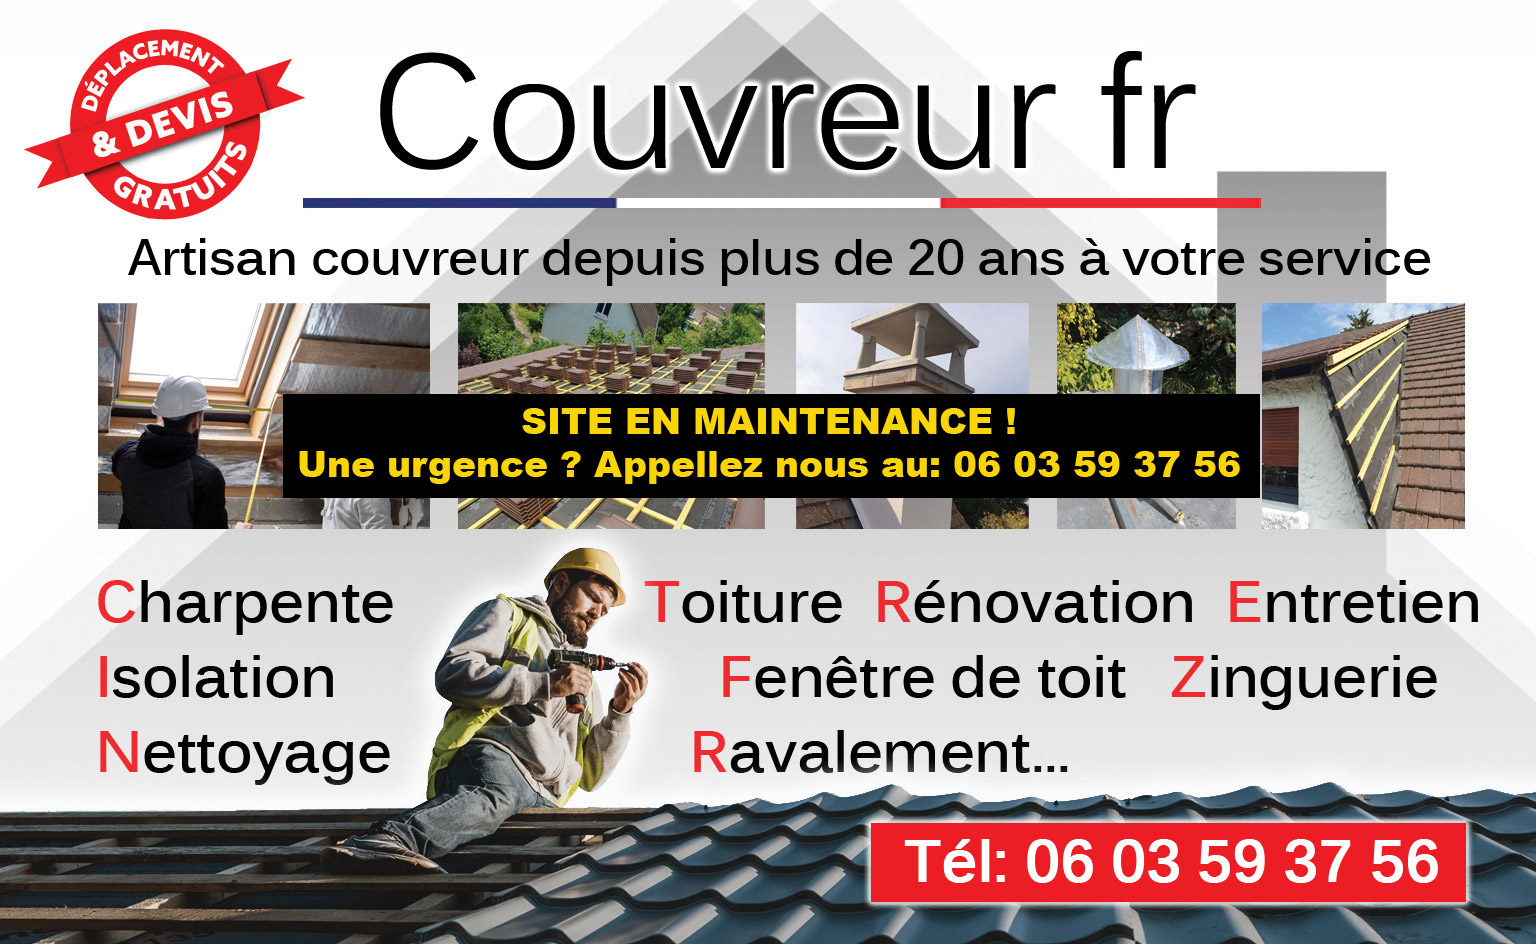 Couvreur fr Artisan couvreur, charpente et toiture, rénovation et entretien